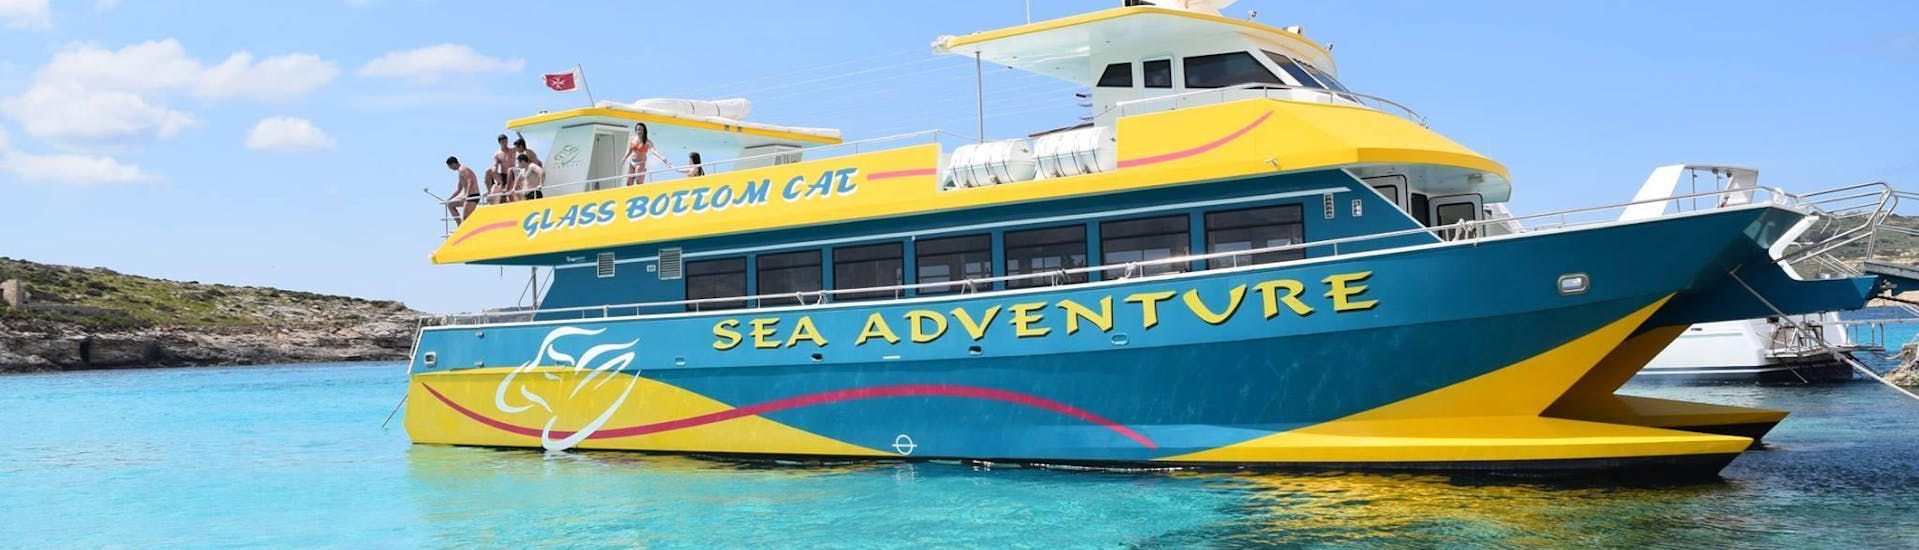 Les vacanciers profitent de la vue pendant leur balade en bateau organisé par Sea Adventure Excursions.